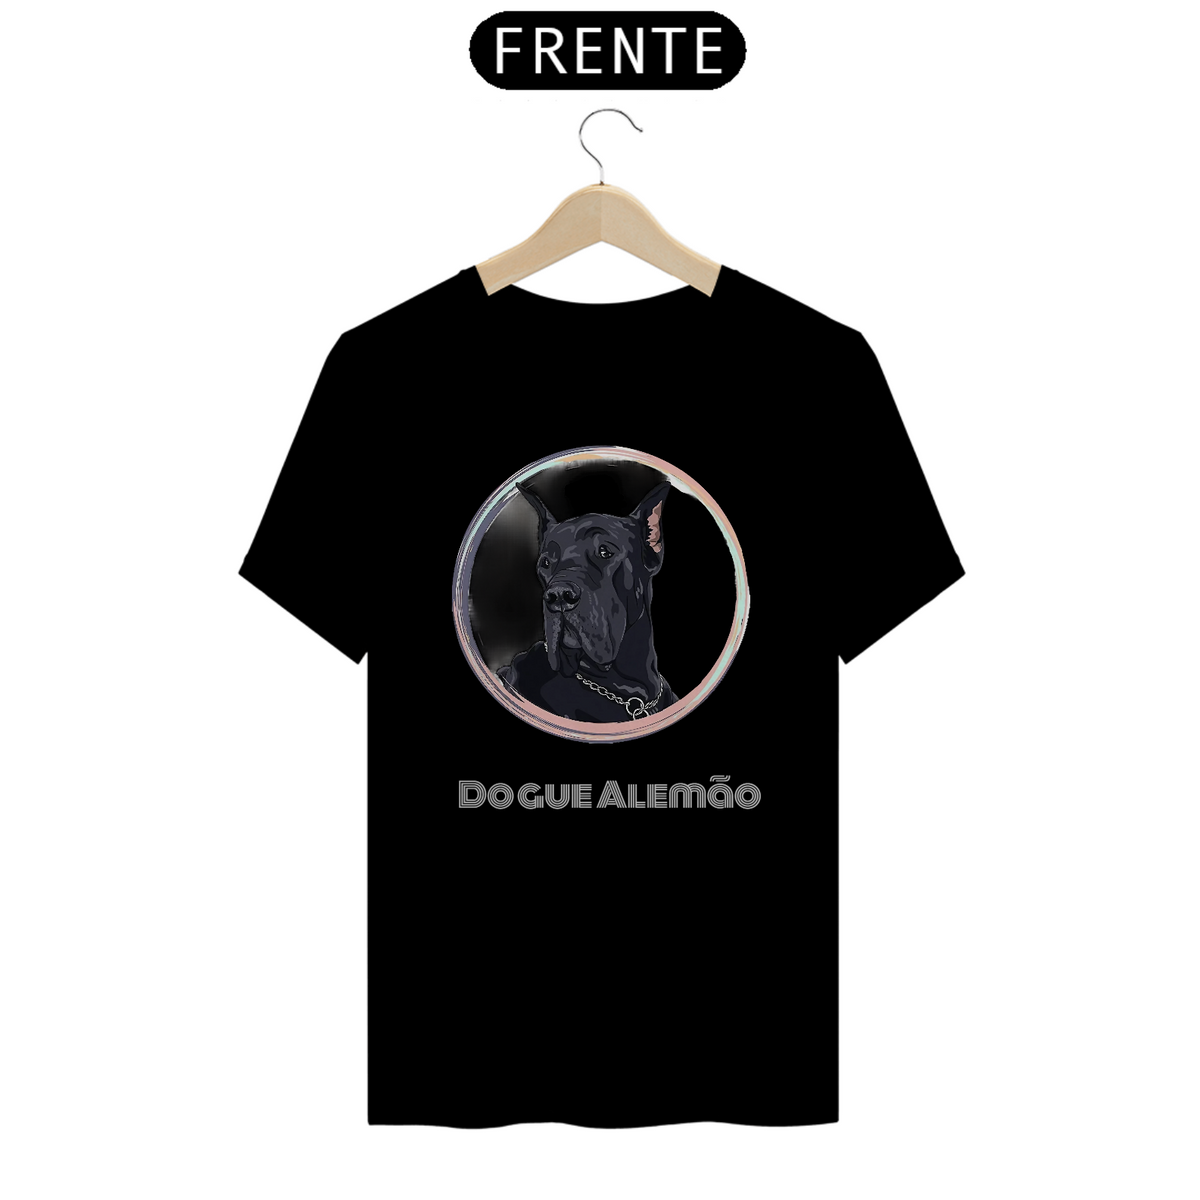 Nome do produto: Camiseta Dogue Alemão / T-shirt Dogue Alemão